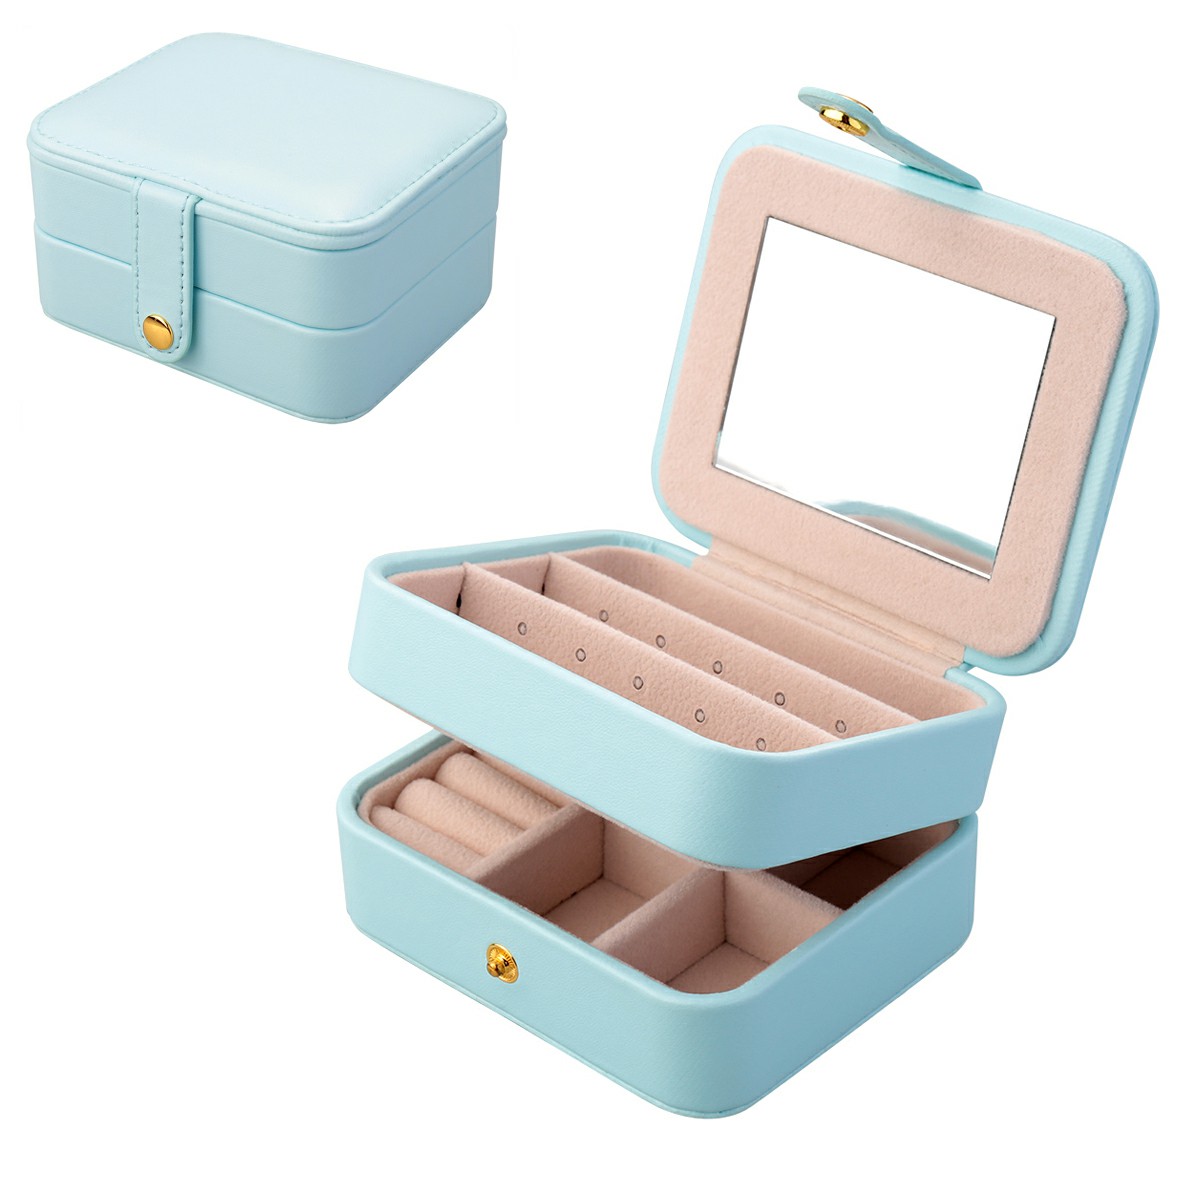 PU Double Layer Mini Storage Jewelry Box - Light Blue